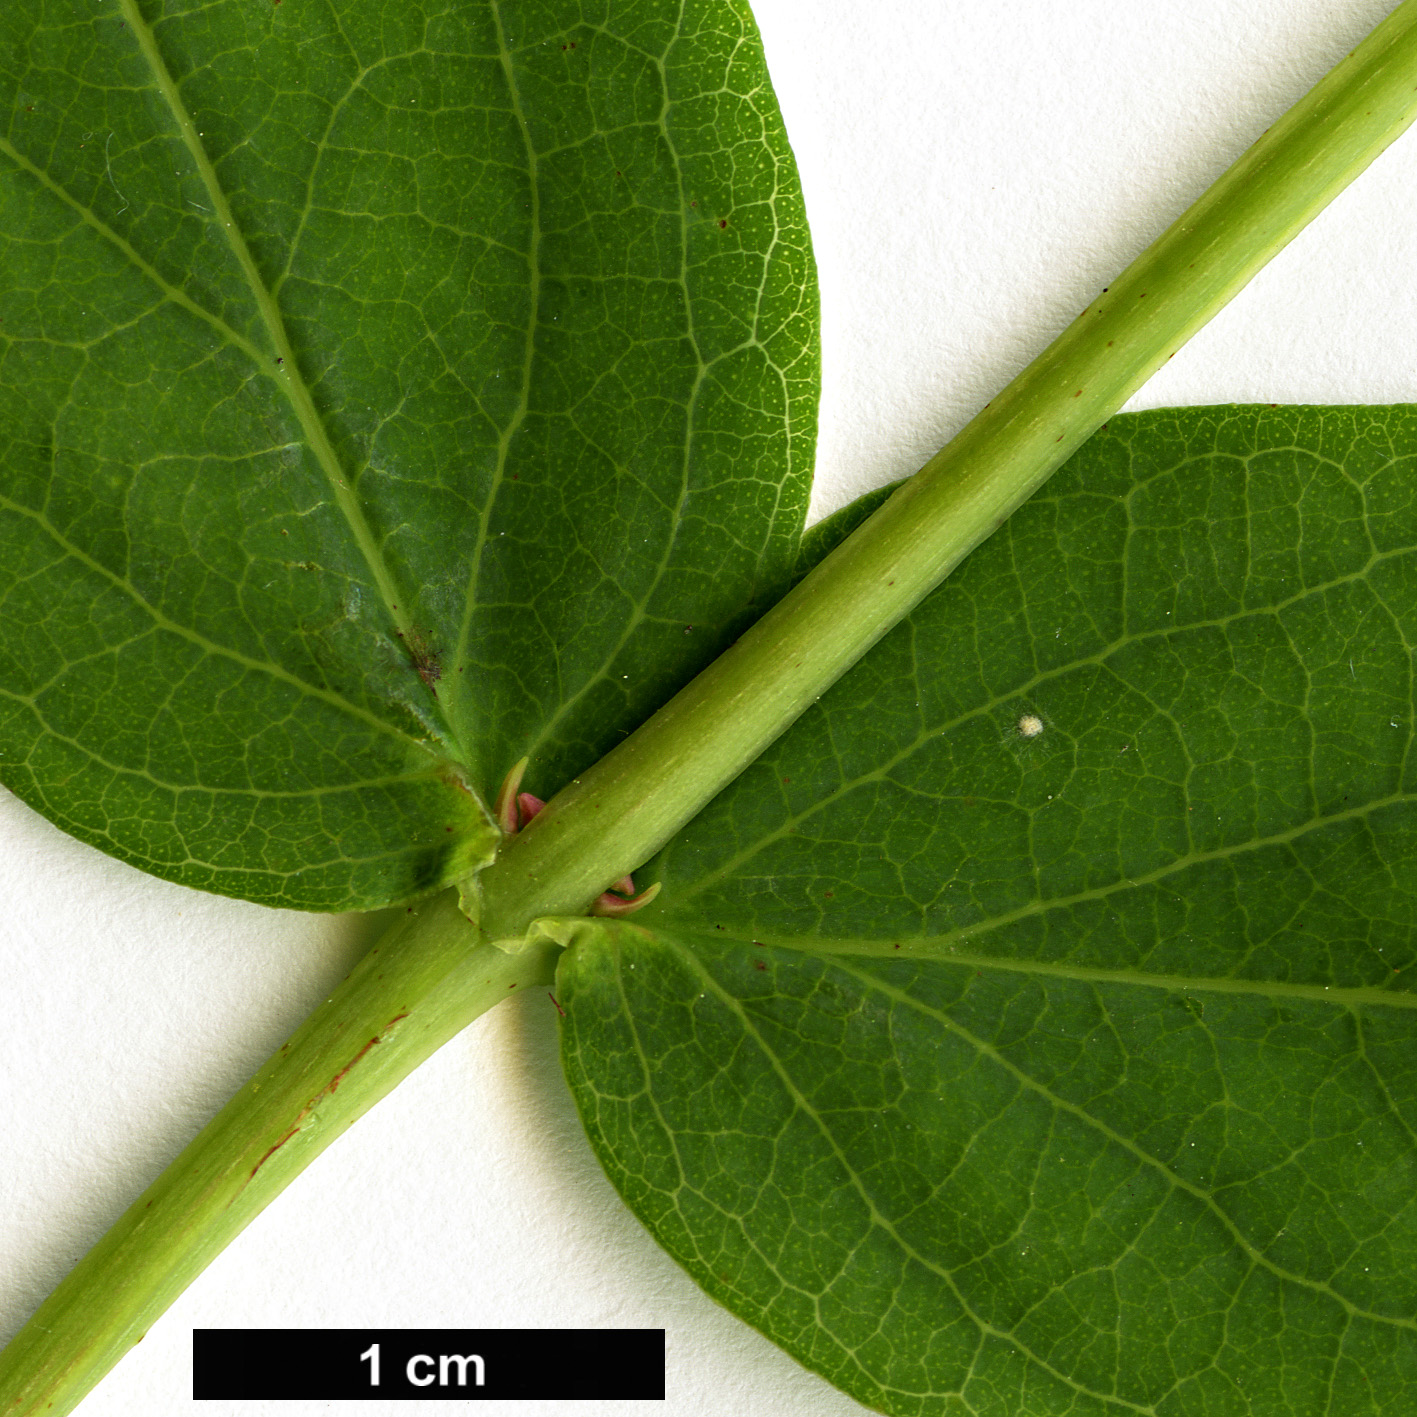 High resolution image: Family: Hypericaceae - Genus: Hypericum - Taxon: hircinum - SpeciesSub: subsp. majus